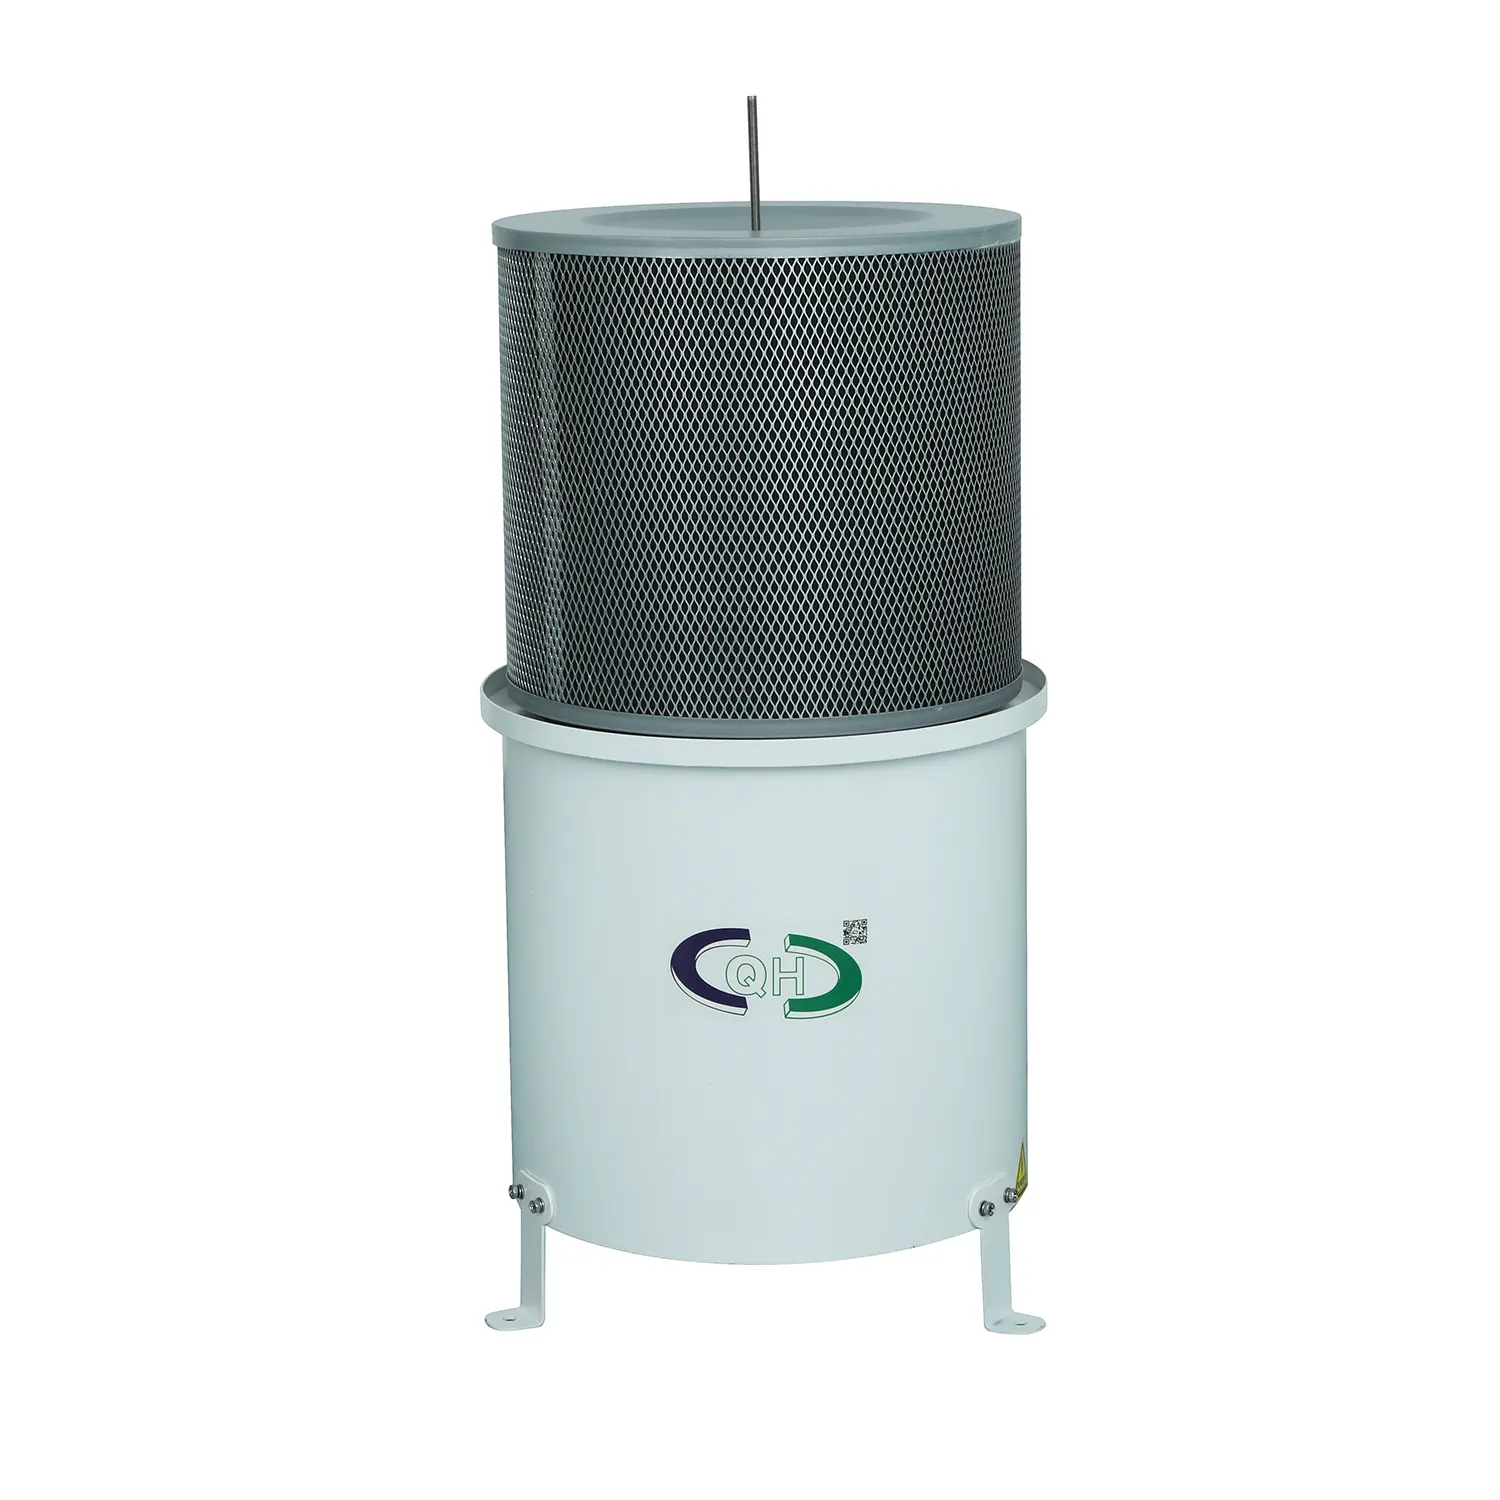 Mesin Cnc mesin pembersih tanpa saluran udara kolektor kabut minyak filtrasi industri